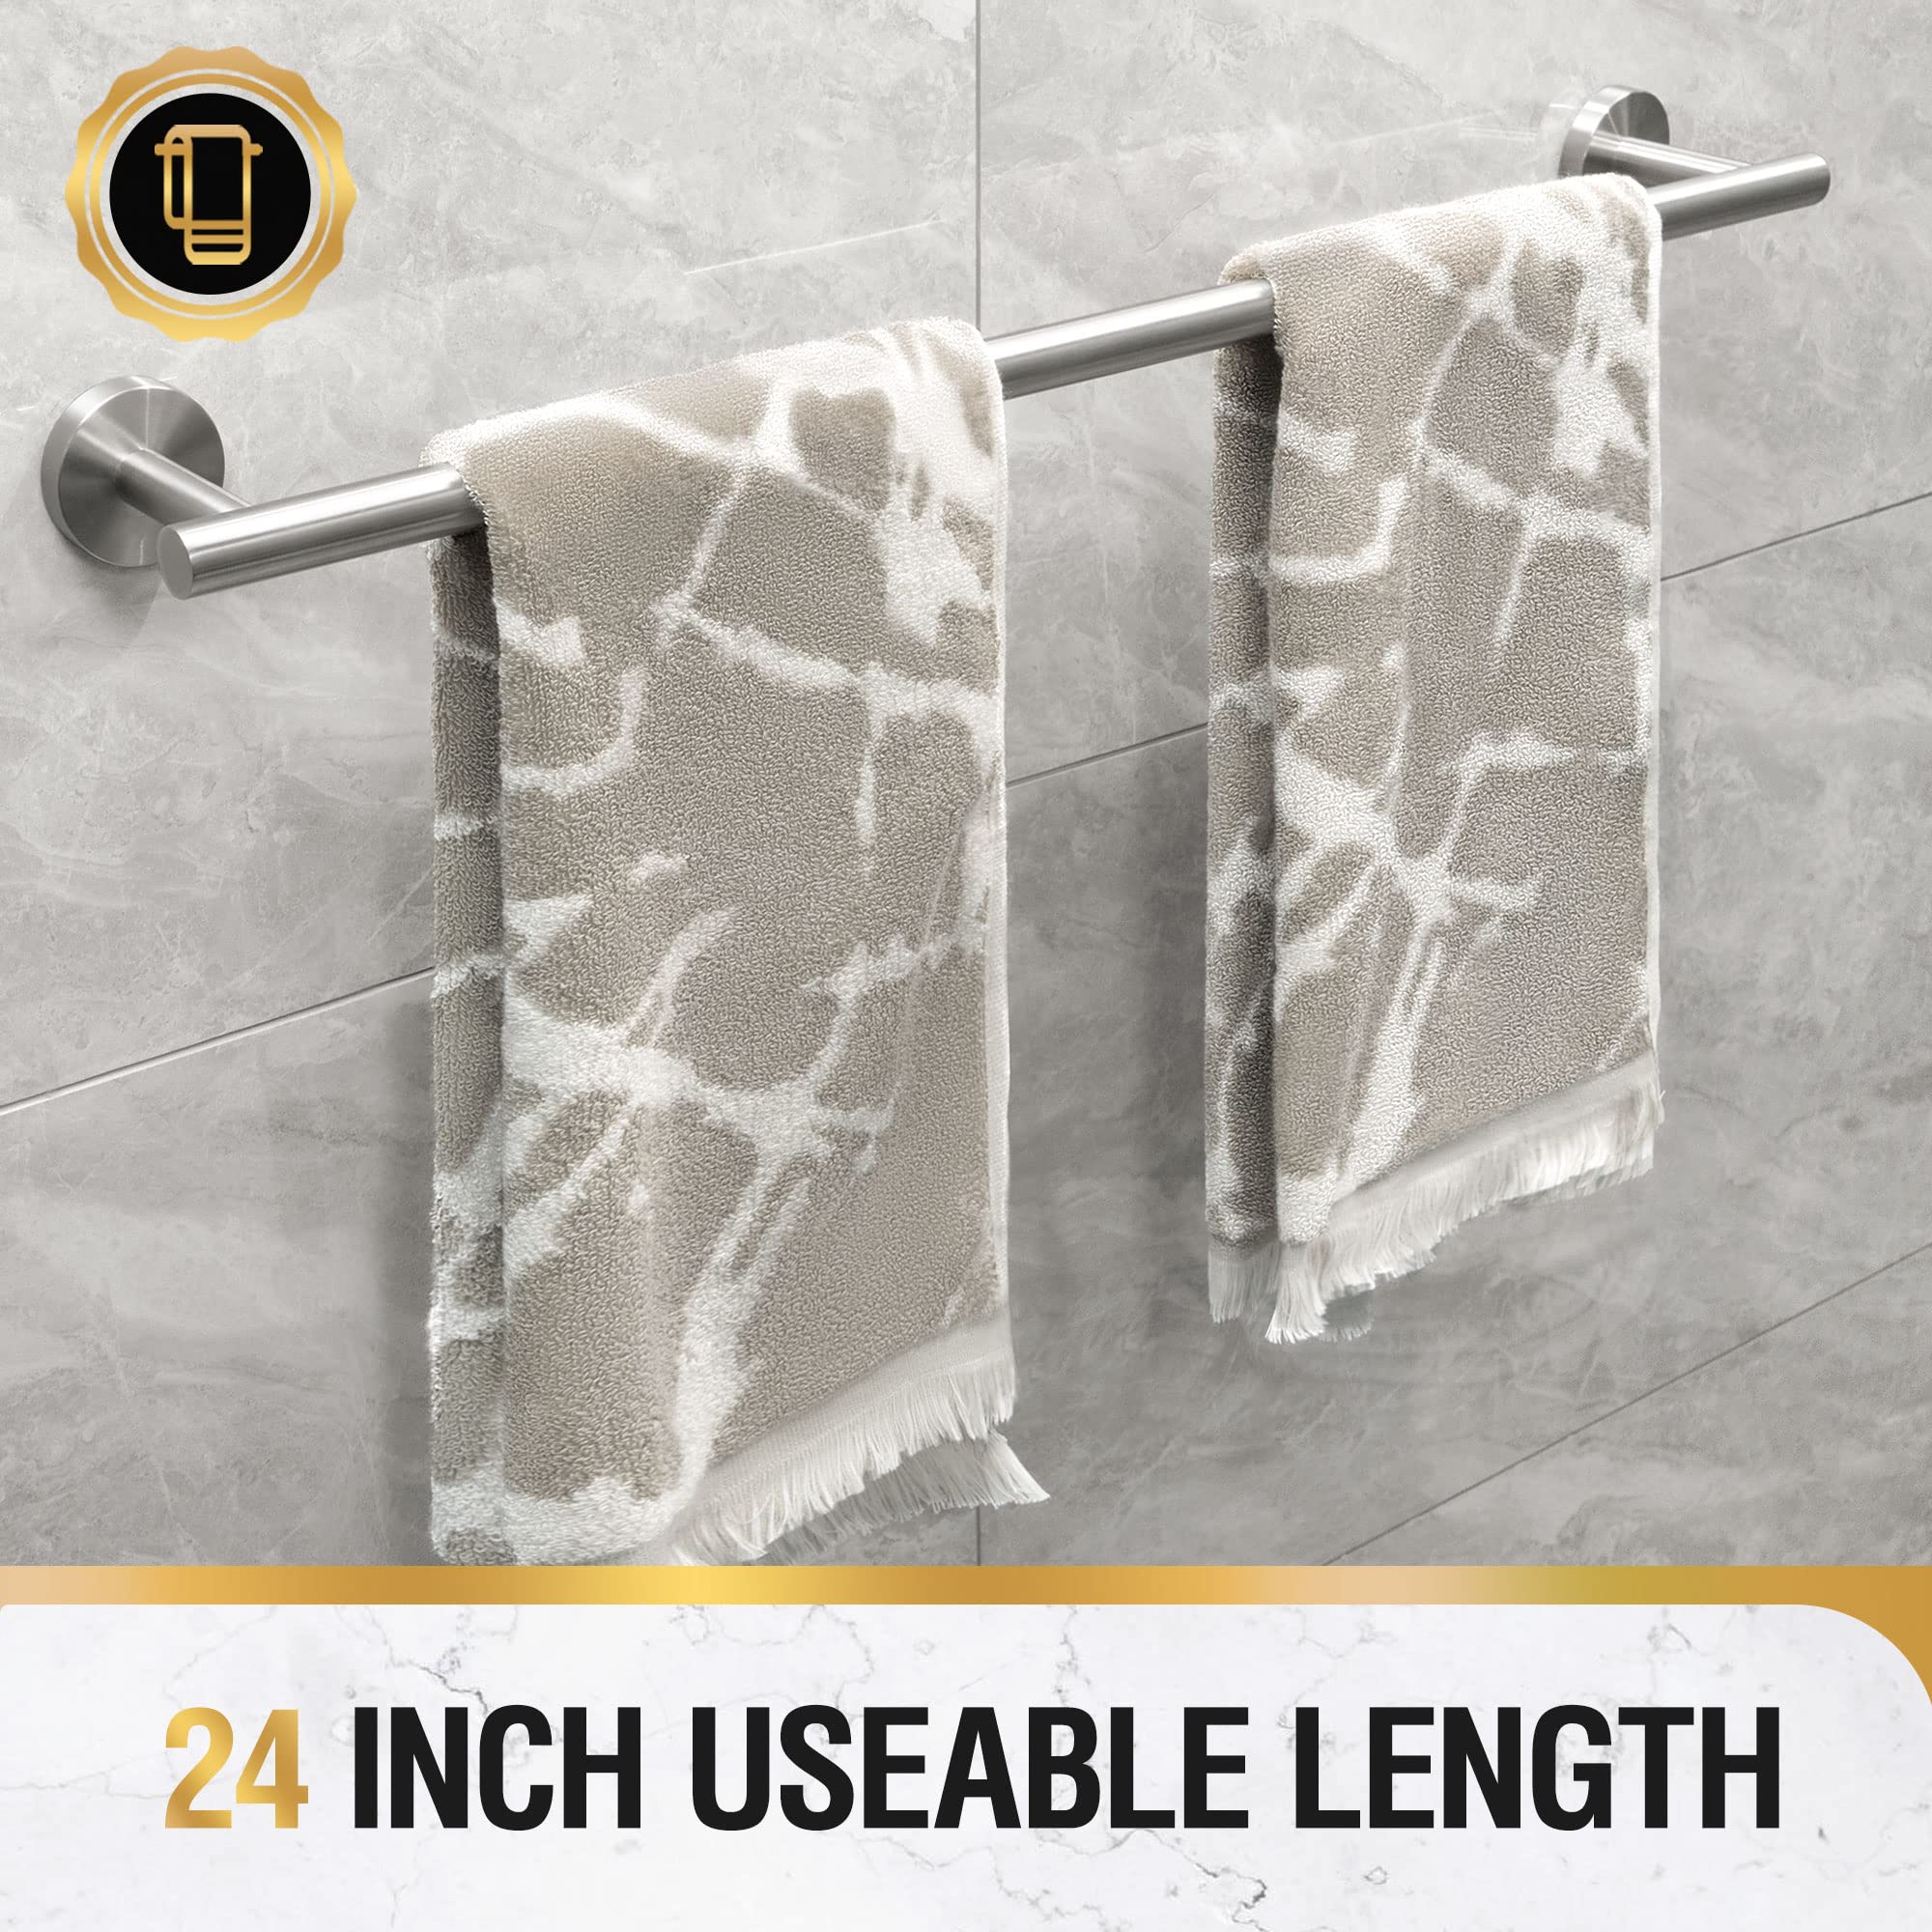 tower rack wall mounted towel bar bathroom stainless steel bath towel holder 25.9 inch brushed nickel